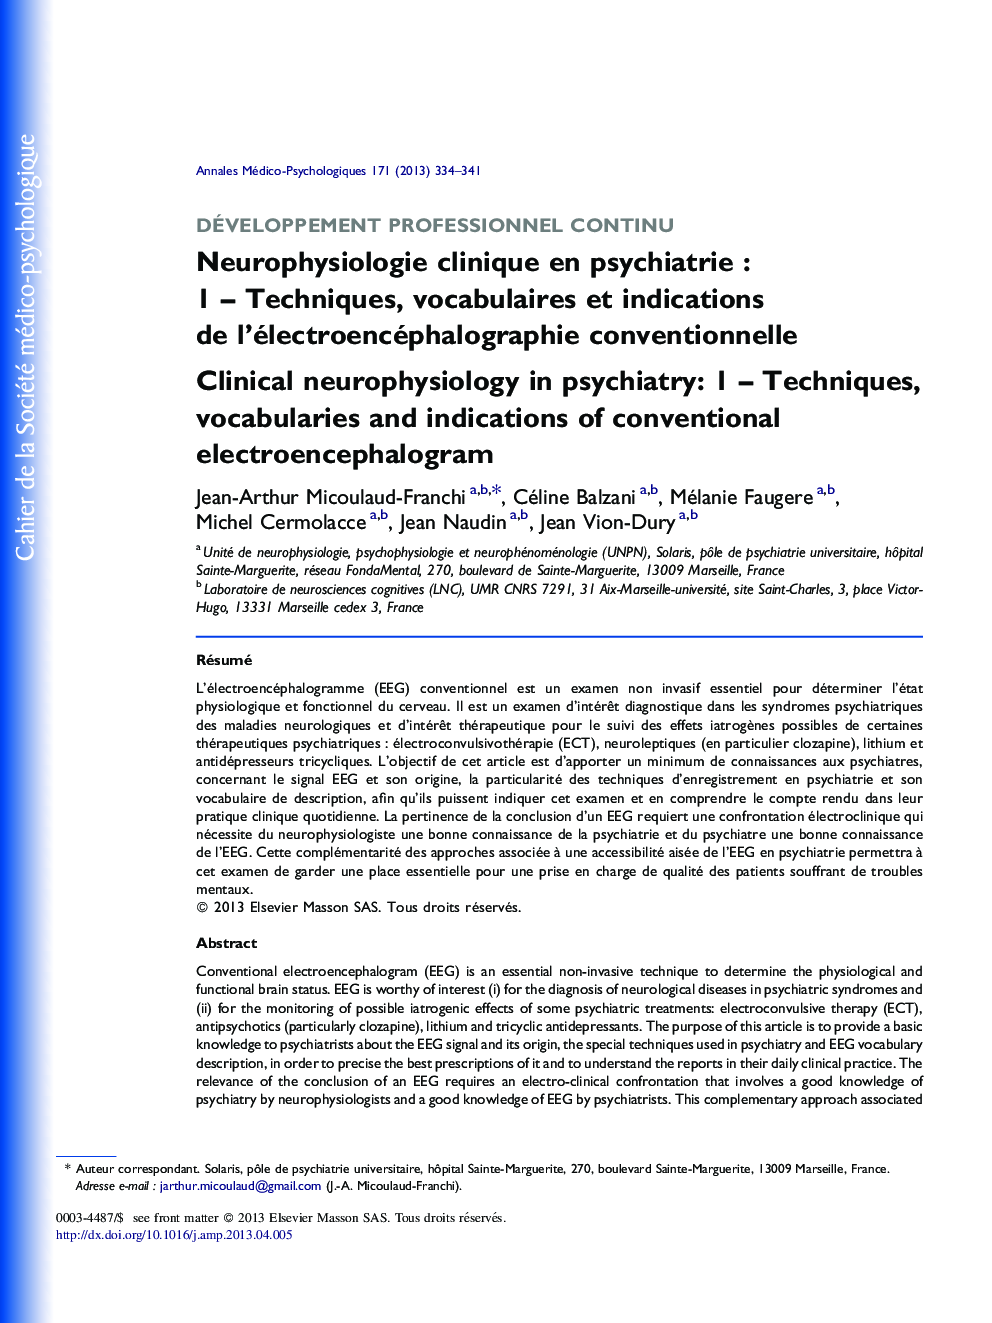 Neurophysiologie clinique en psychiatrie : 1 – Techniques, vocabulaires et indications de l’électroencéphalographie conventionnelle